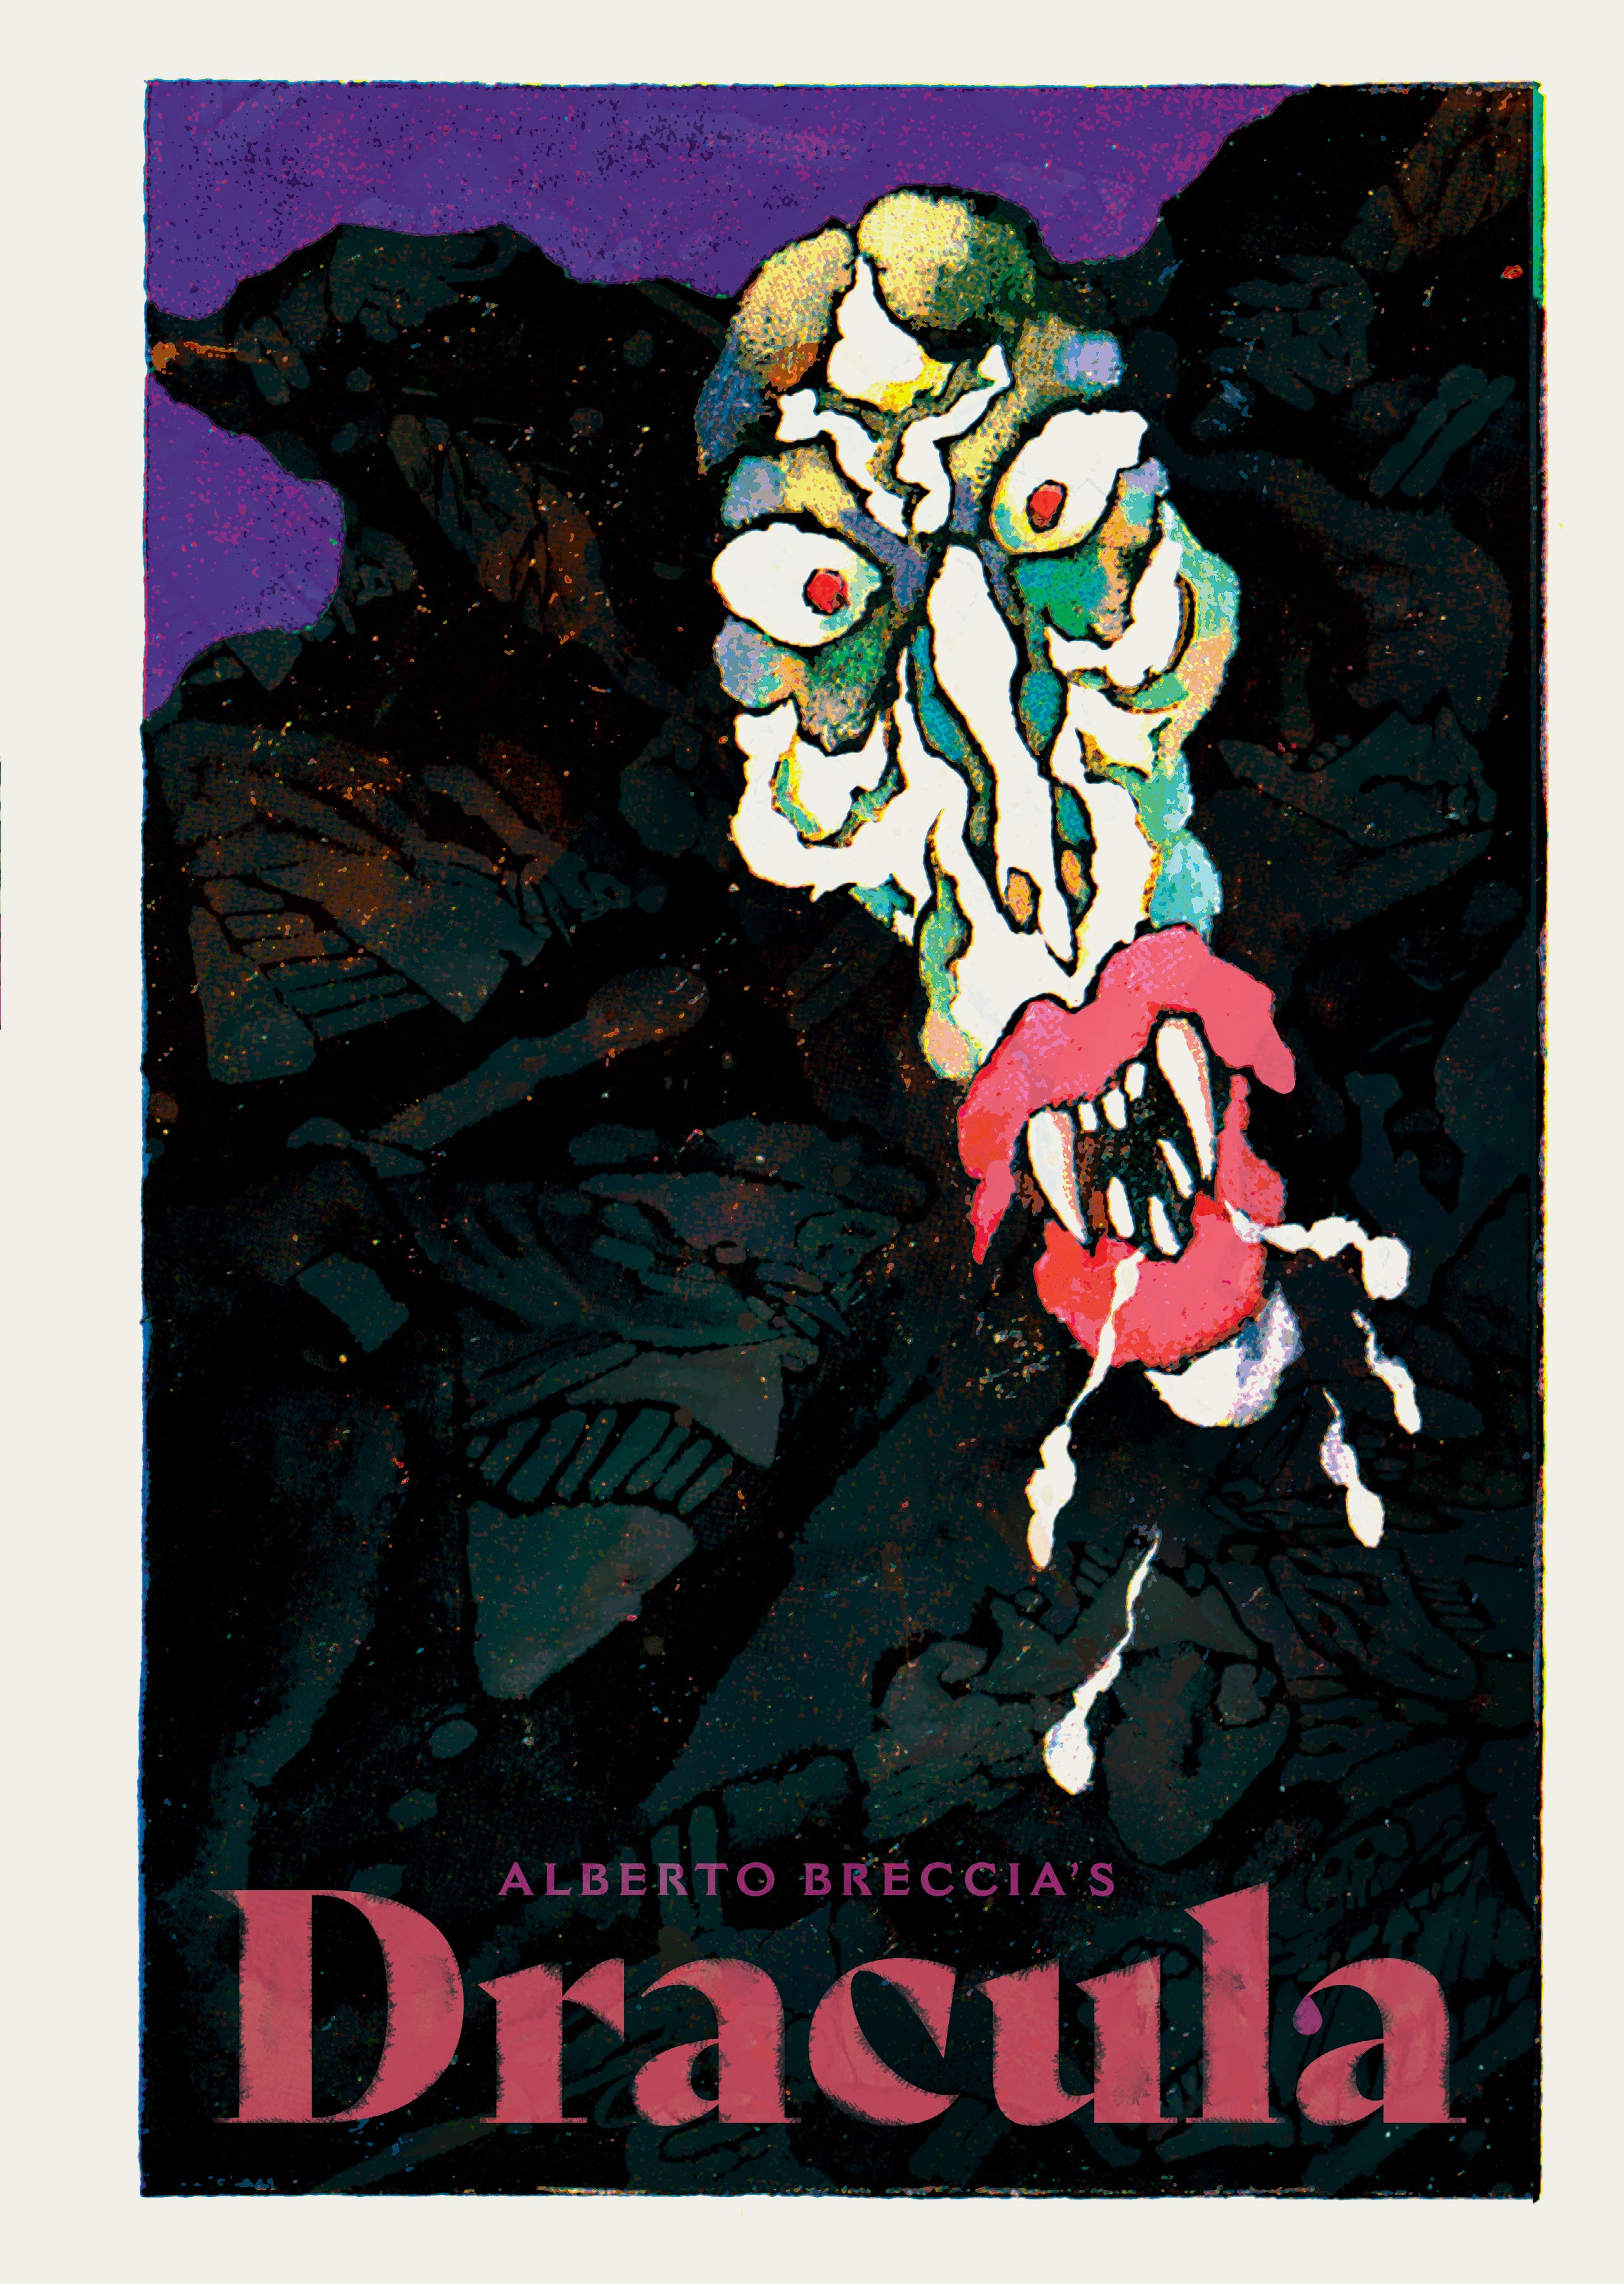 Read online Alberto Breccia's Dracula comic -  Issue # TPB - 1